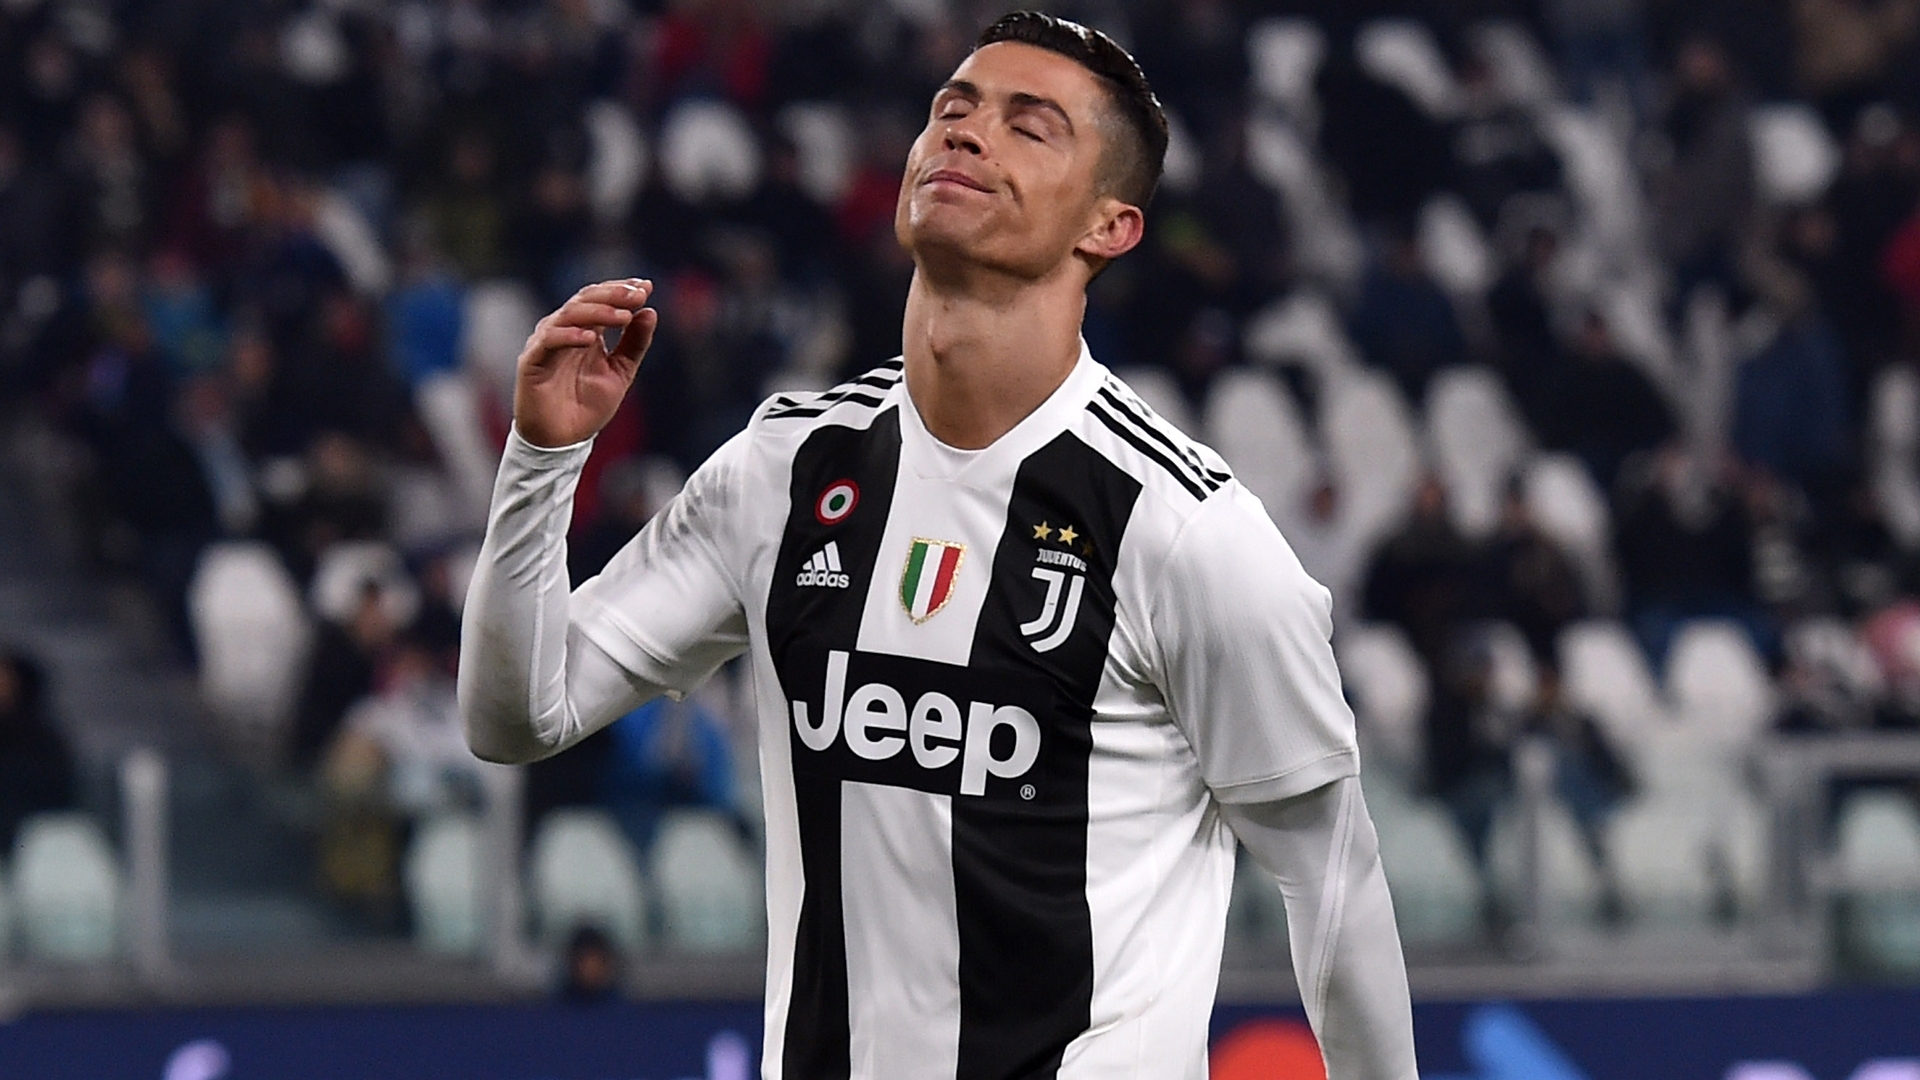 Juventus vs Udinese, nhận định bóng đá đêm nay, soi kèo bóng đá, tỷ lệ kèo, nhận định Juventus vs Udinese, dự đoán kết quả bóng đá, dự đoán Juventus vs Udinese